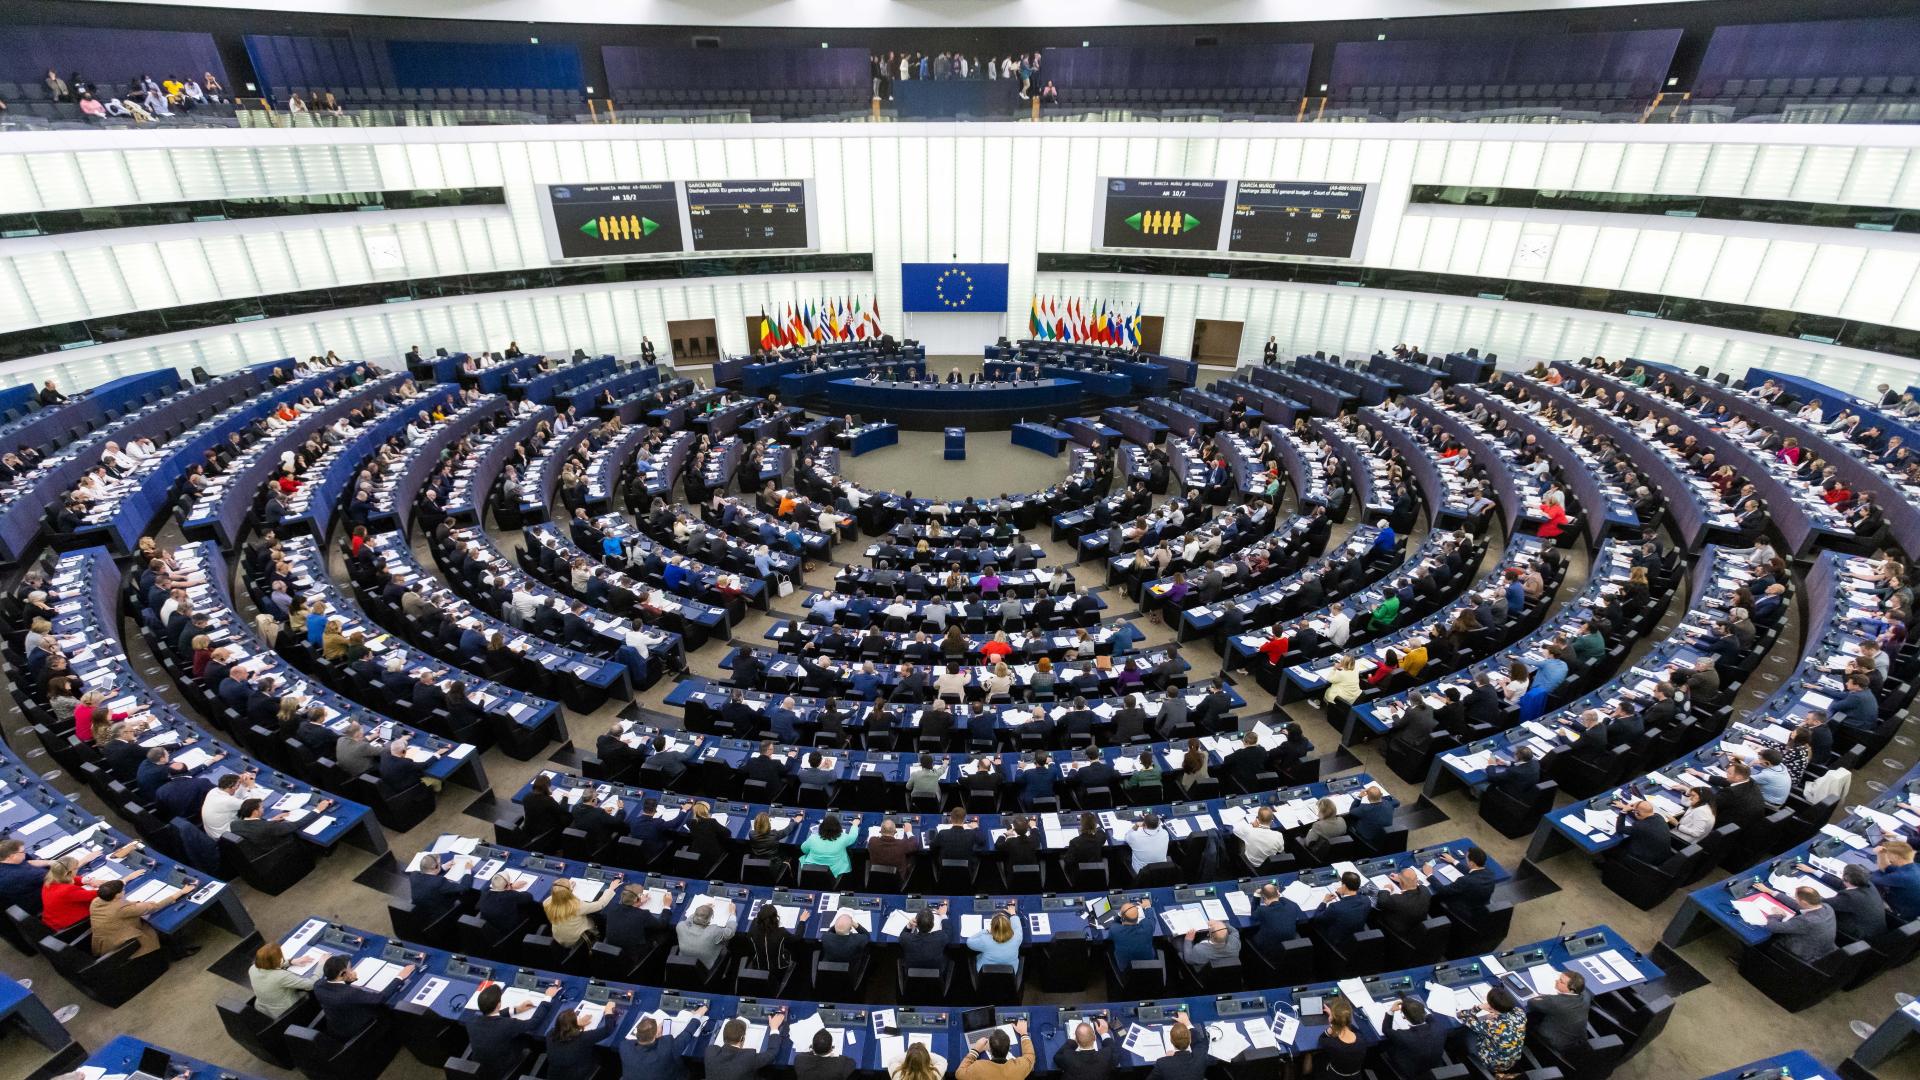 Korruptionsskandal in der Europäischen Union: Zwei weitere Abgeordnete unter Verdacht